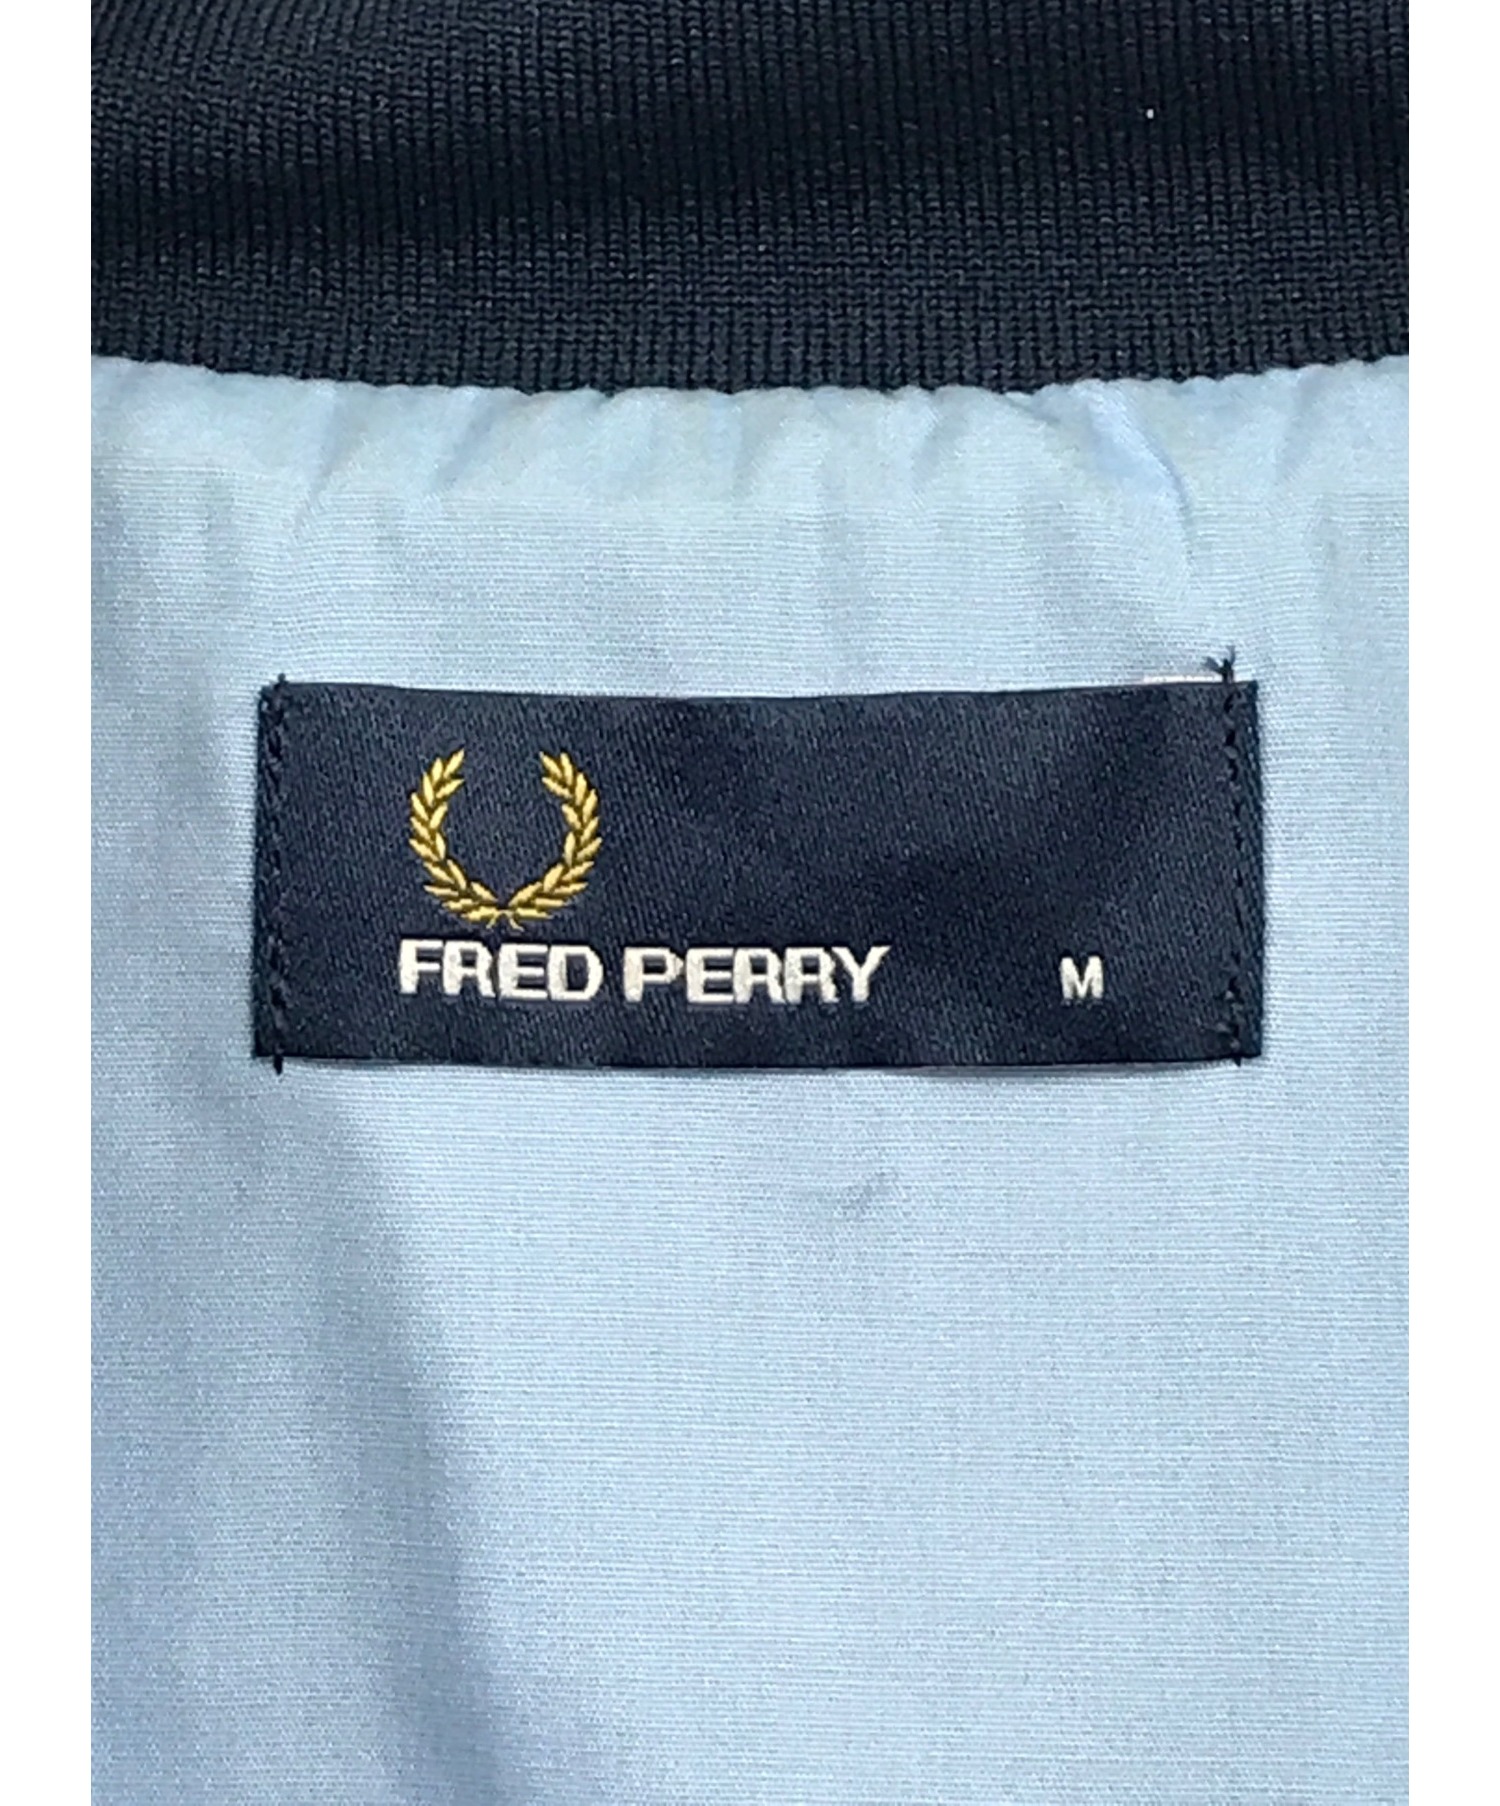 FRED PERRY (フレッドペリー) アノラックパーカー ネイビー サイズ:SIZE M